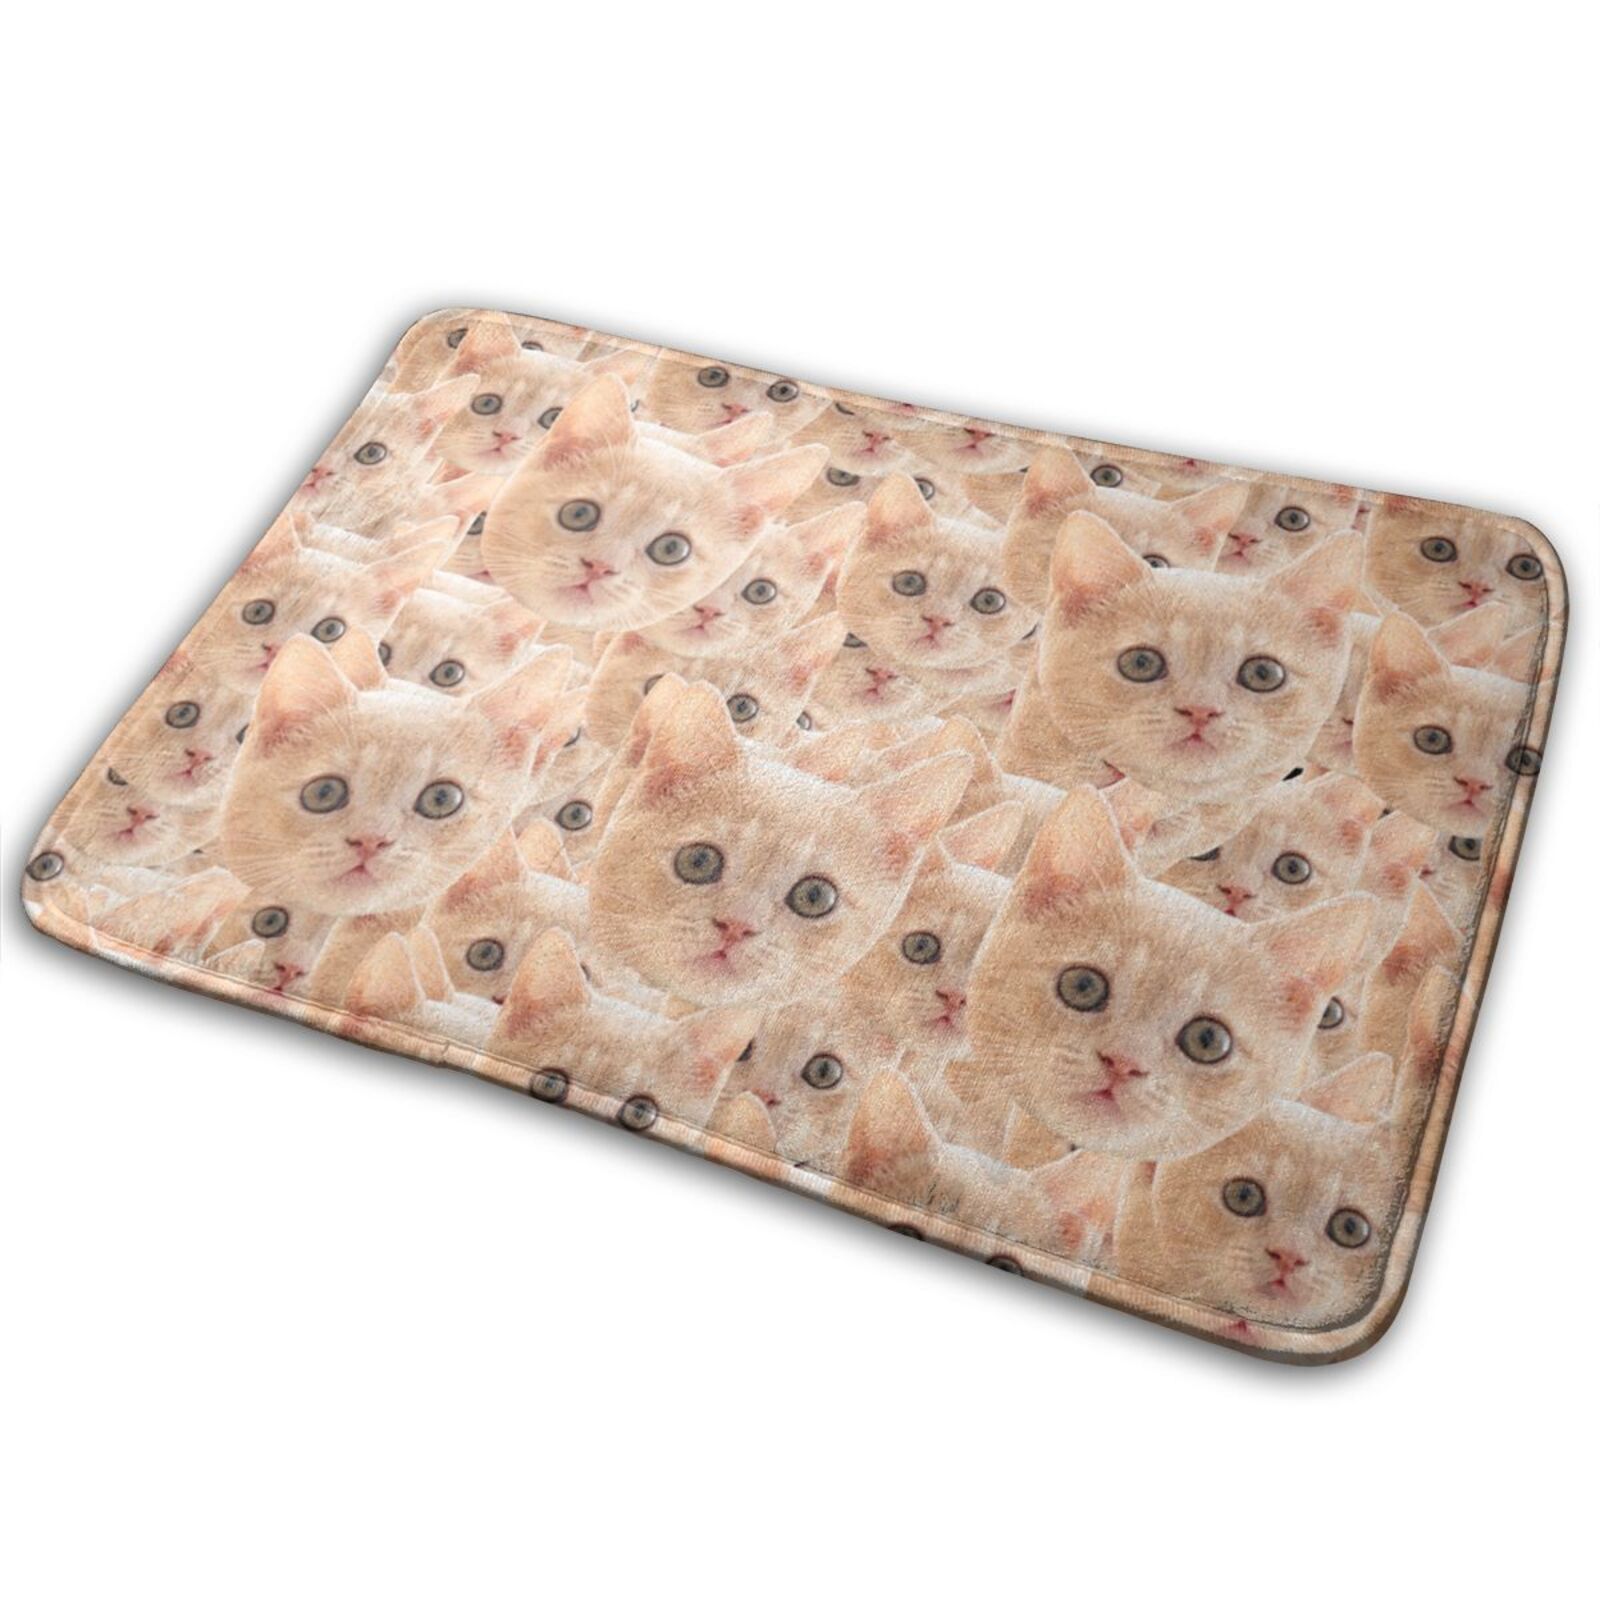 Custom Pet Photo Doormat With Full Dog Cat Face